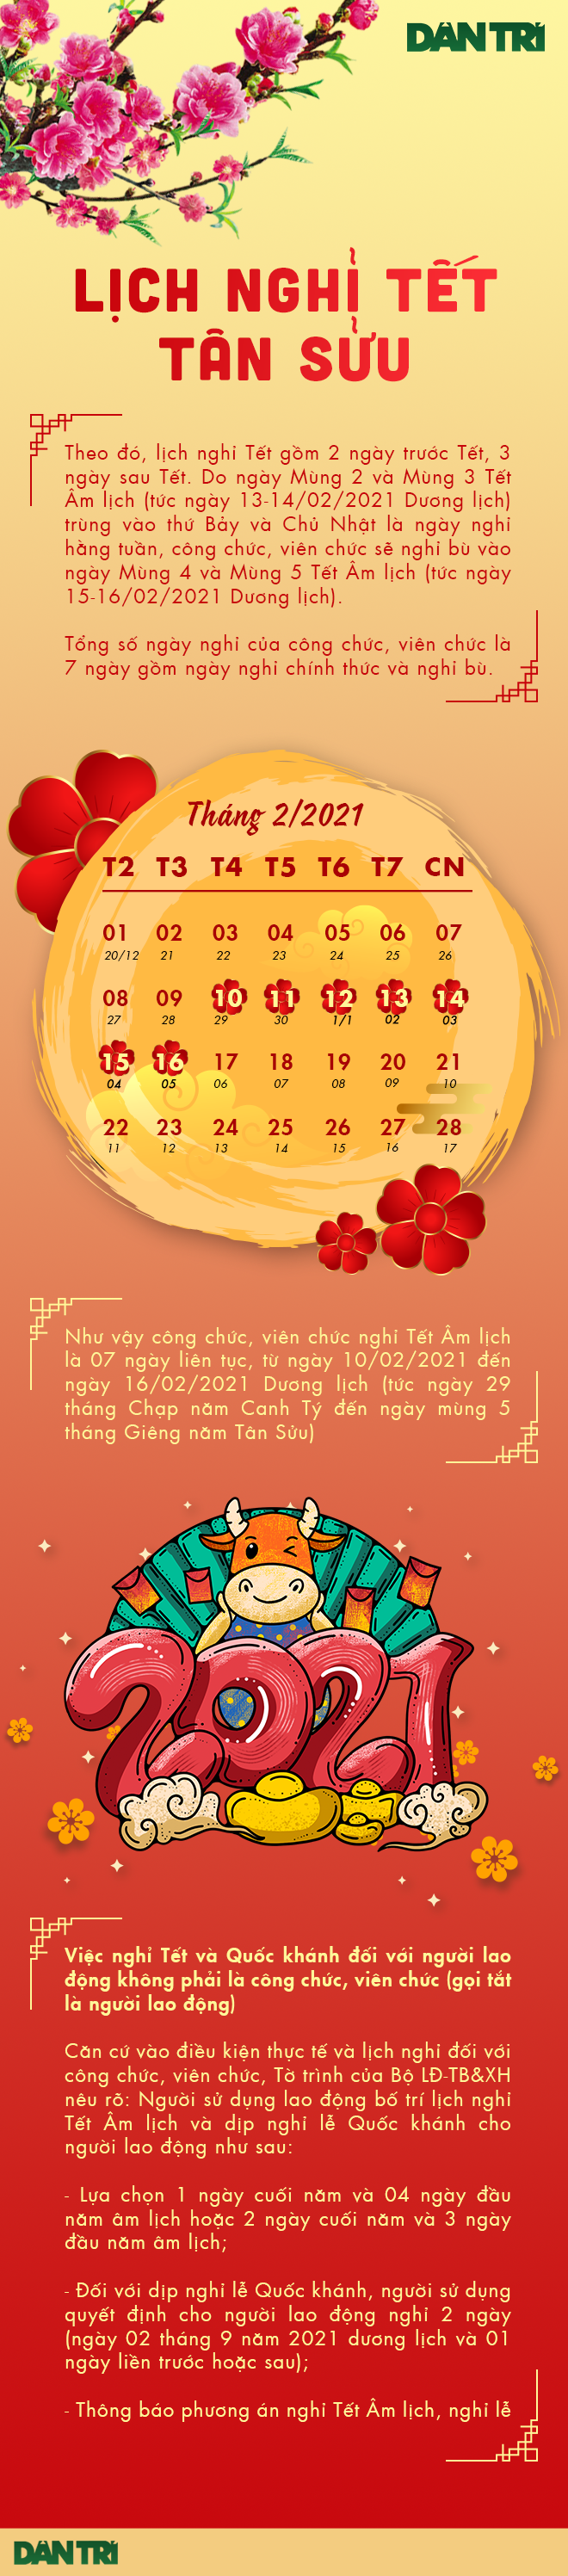 Infographic: Lịch nghỉ Tết Nguyên đán Tân Sửu và Quốc khánh 2/9